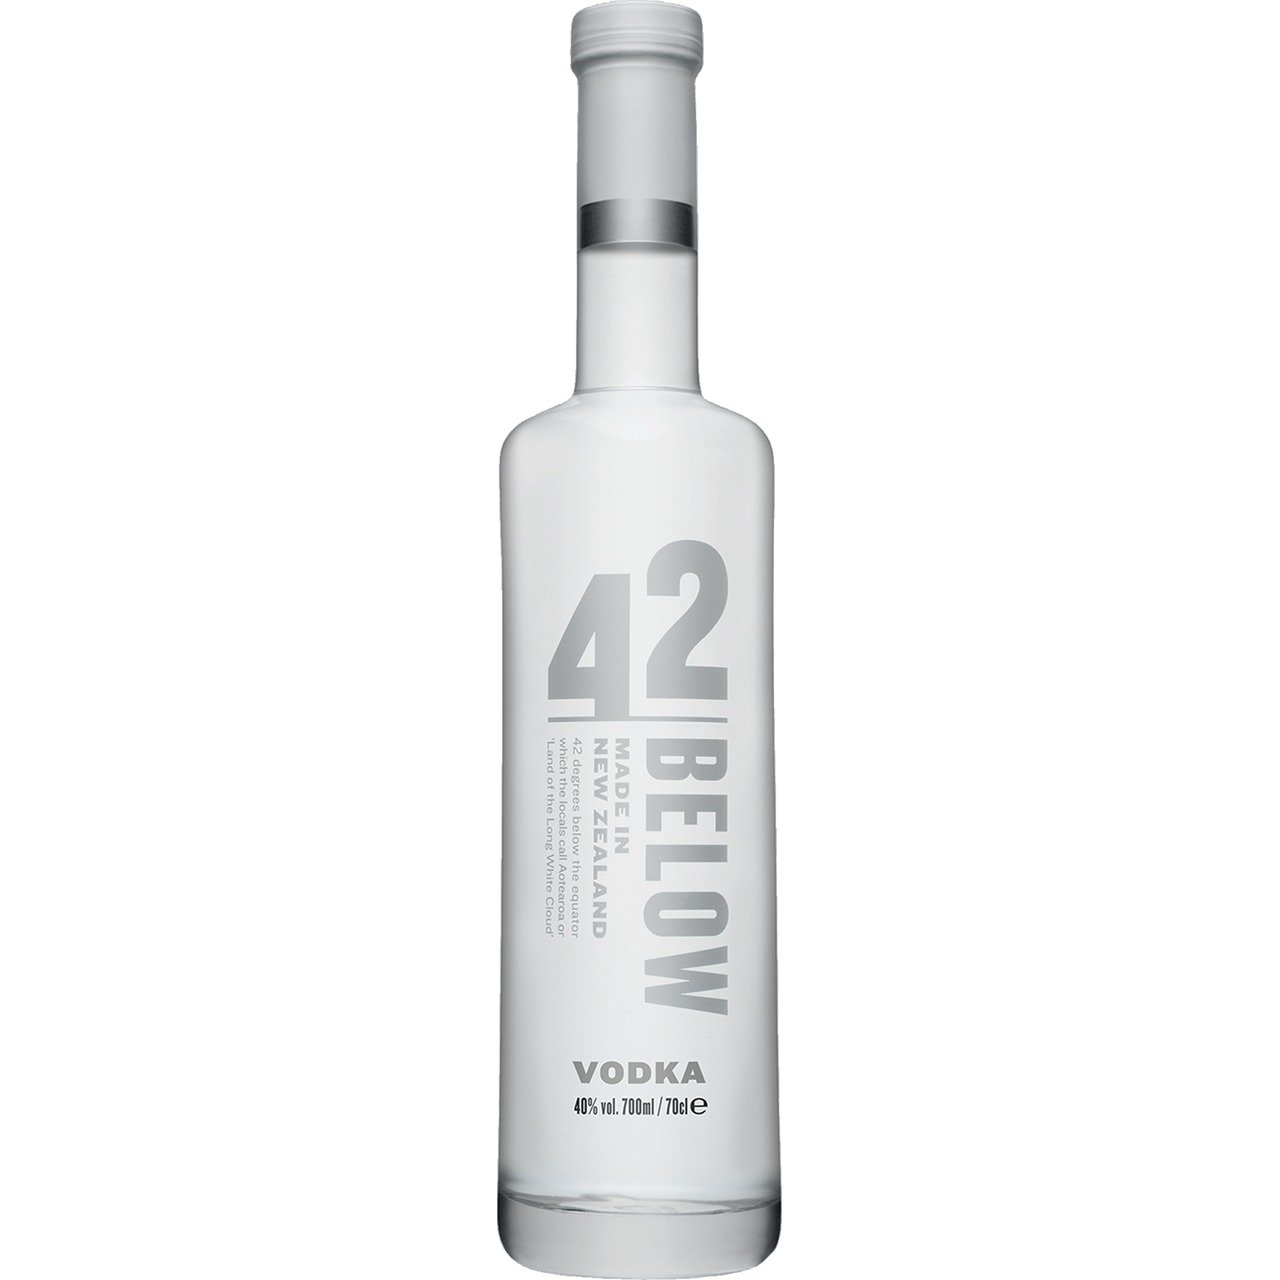 Danzka 40% Vodka Distilled 1l Vol. Premium ORIGINAL